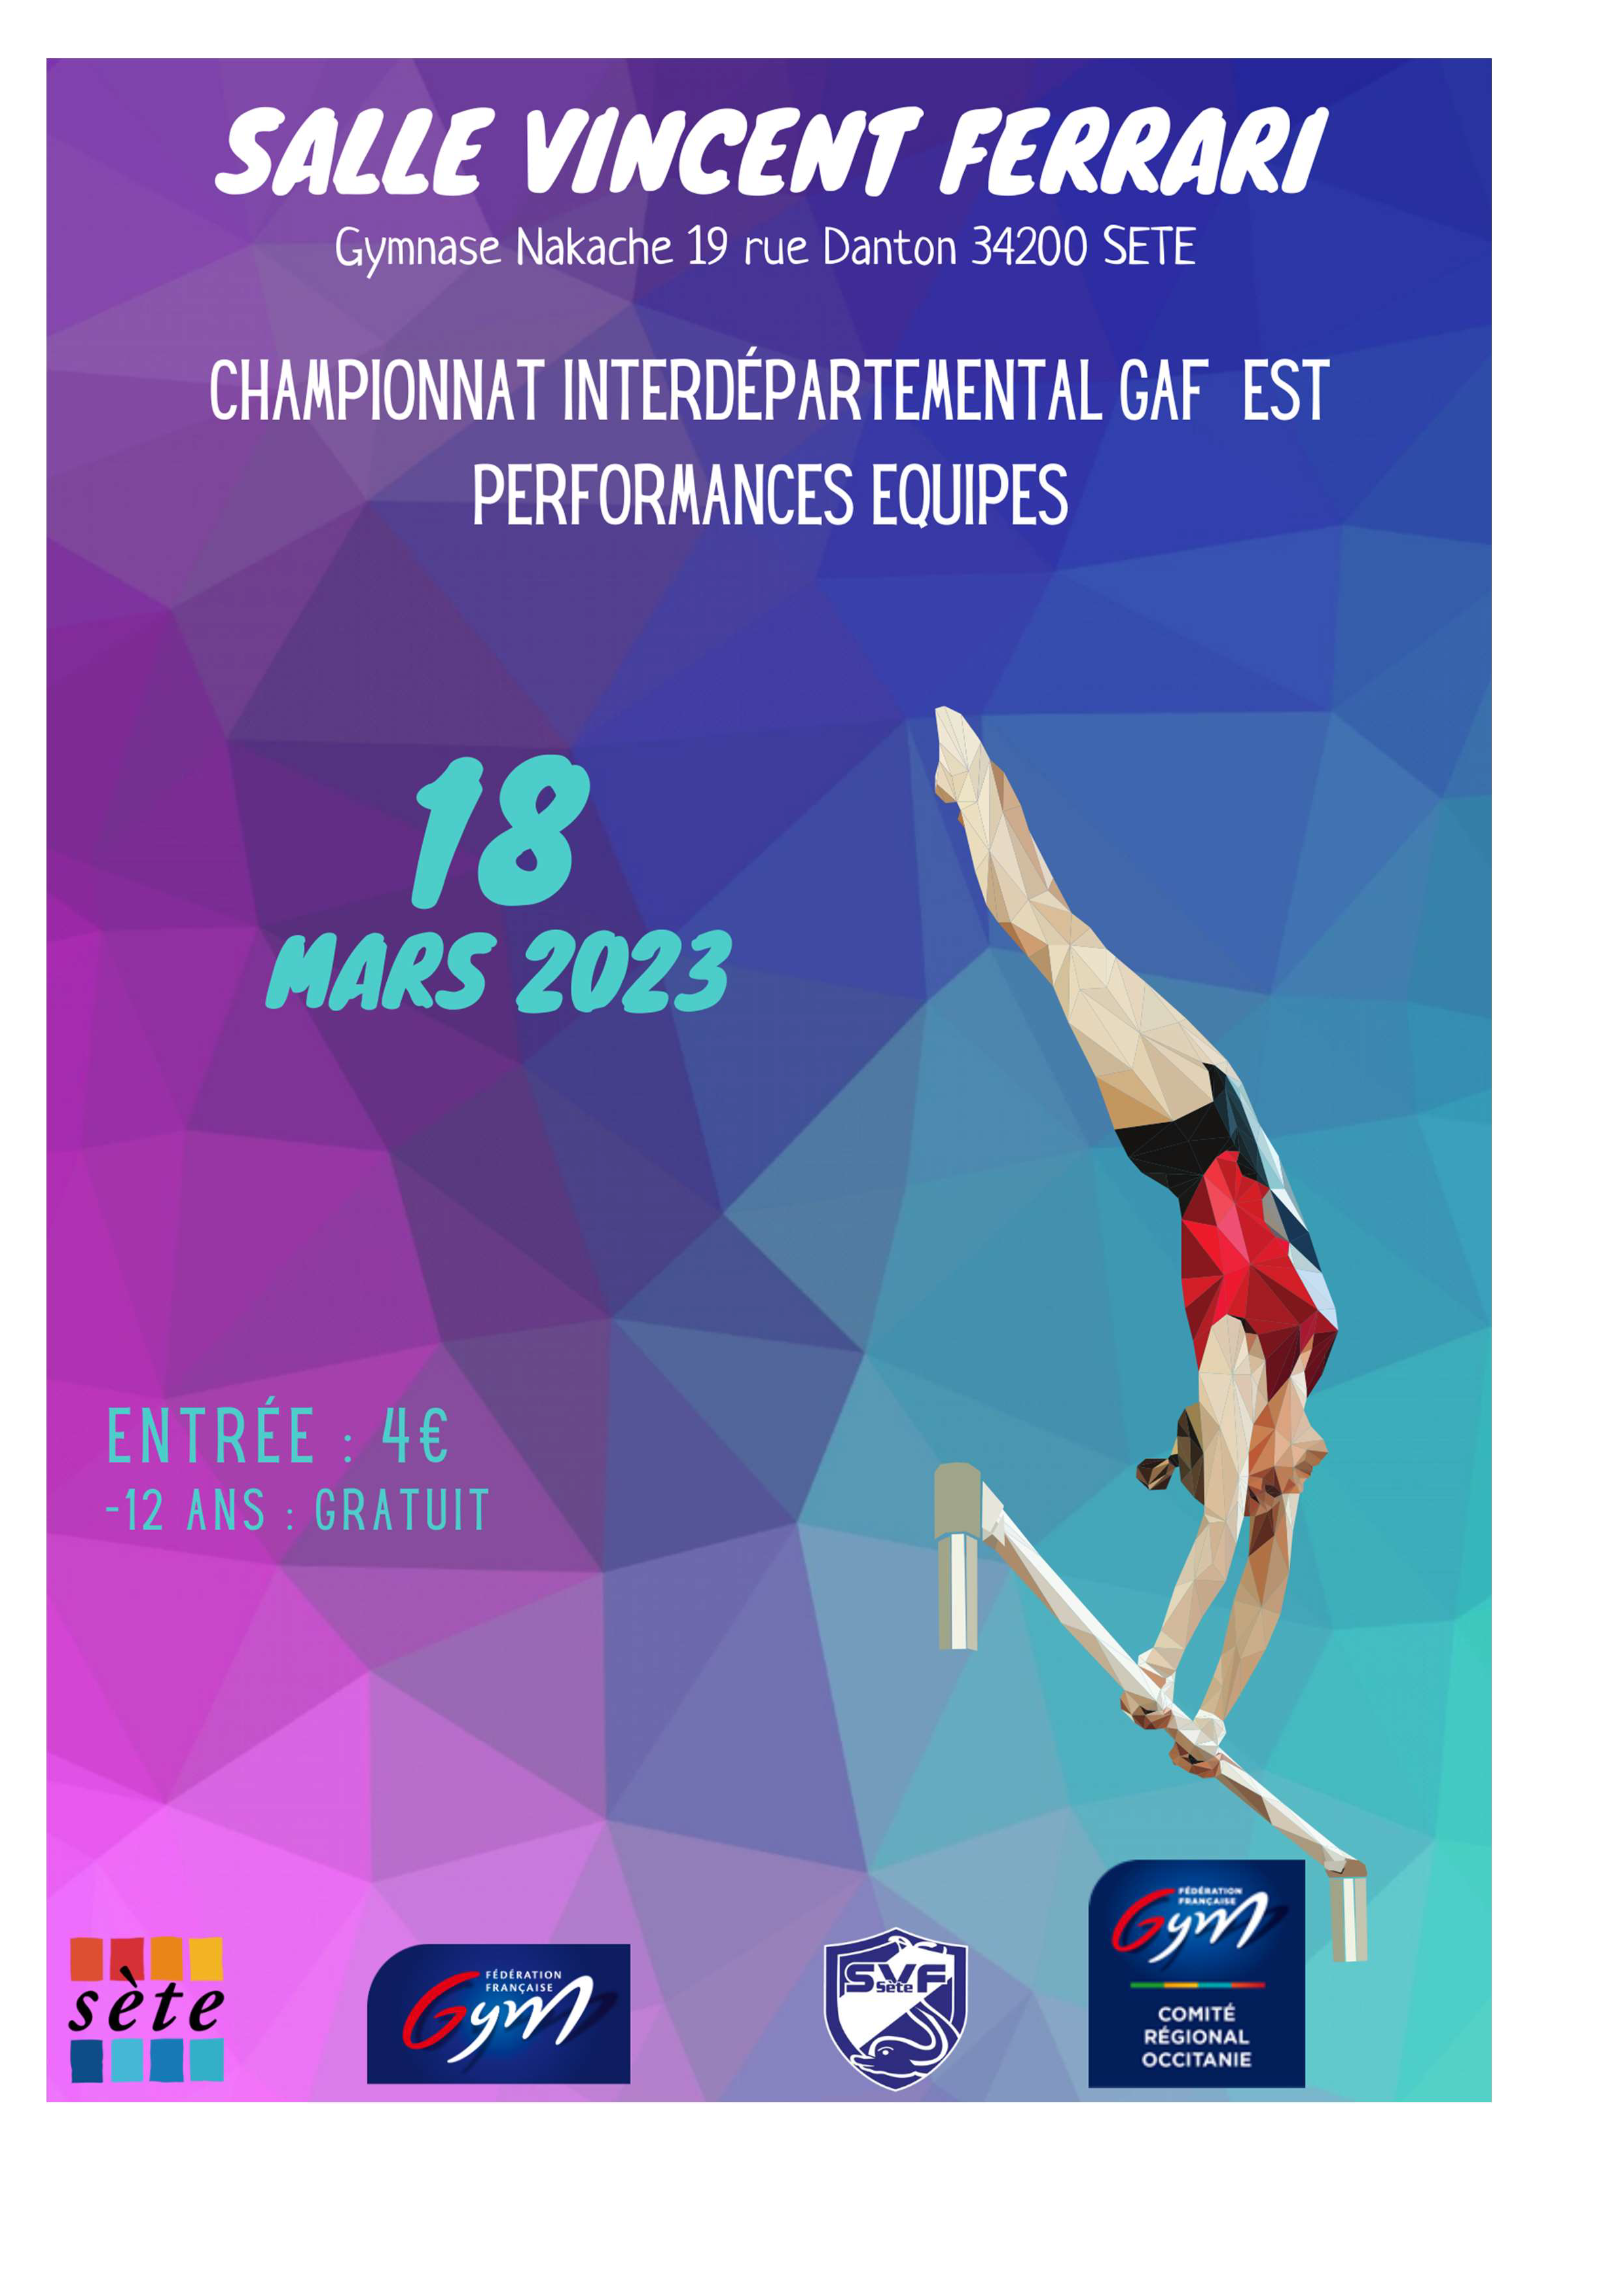 GAF - COMPÉTITION INTERDÉPARTEMENTALE EST EQUIPES PERFORMANCES LE 18 MARS 2023 À SÈTE